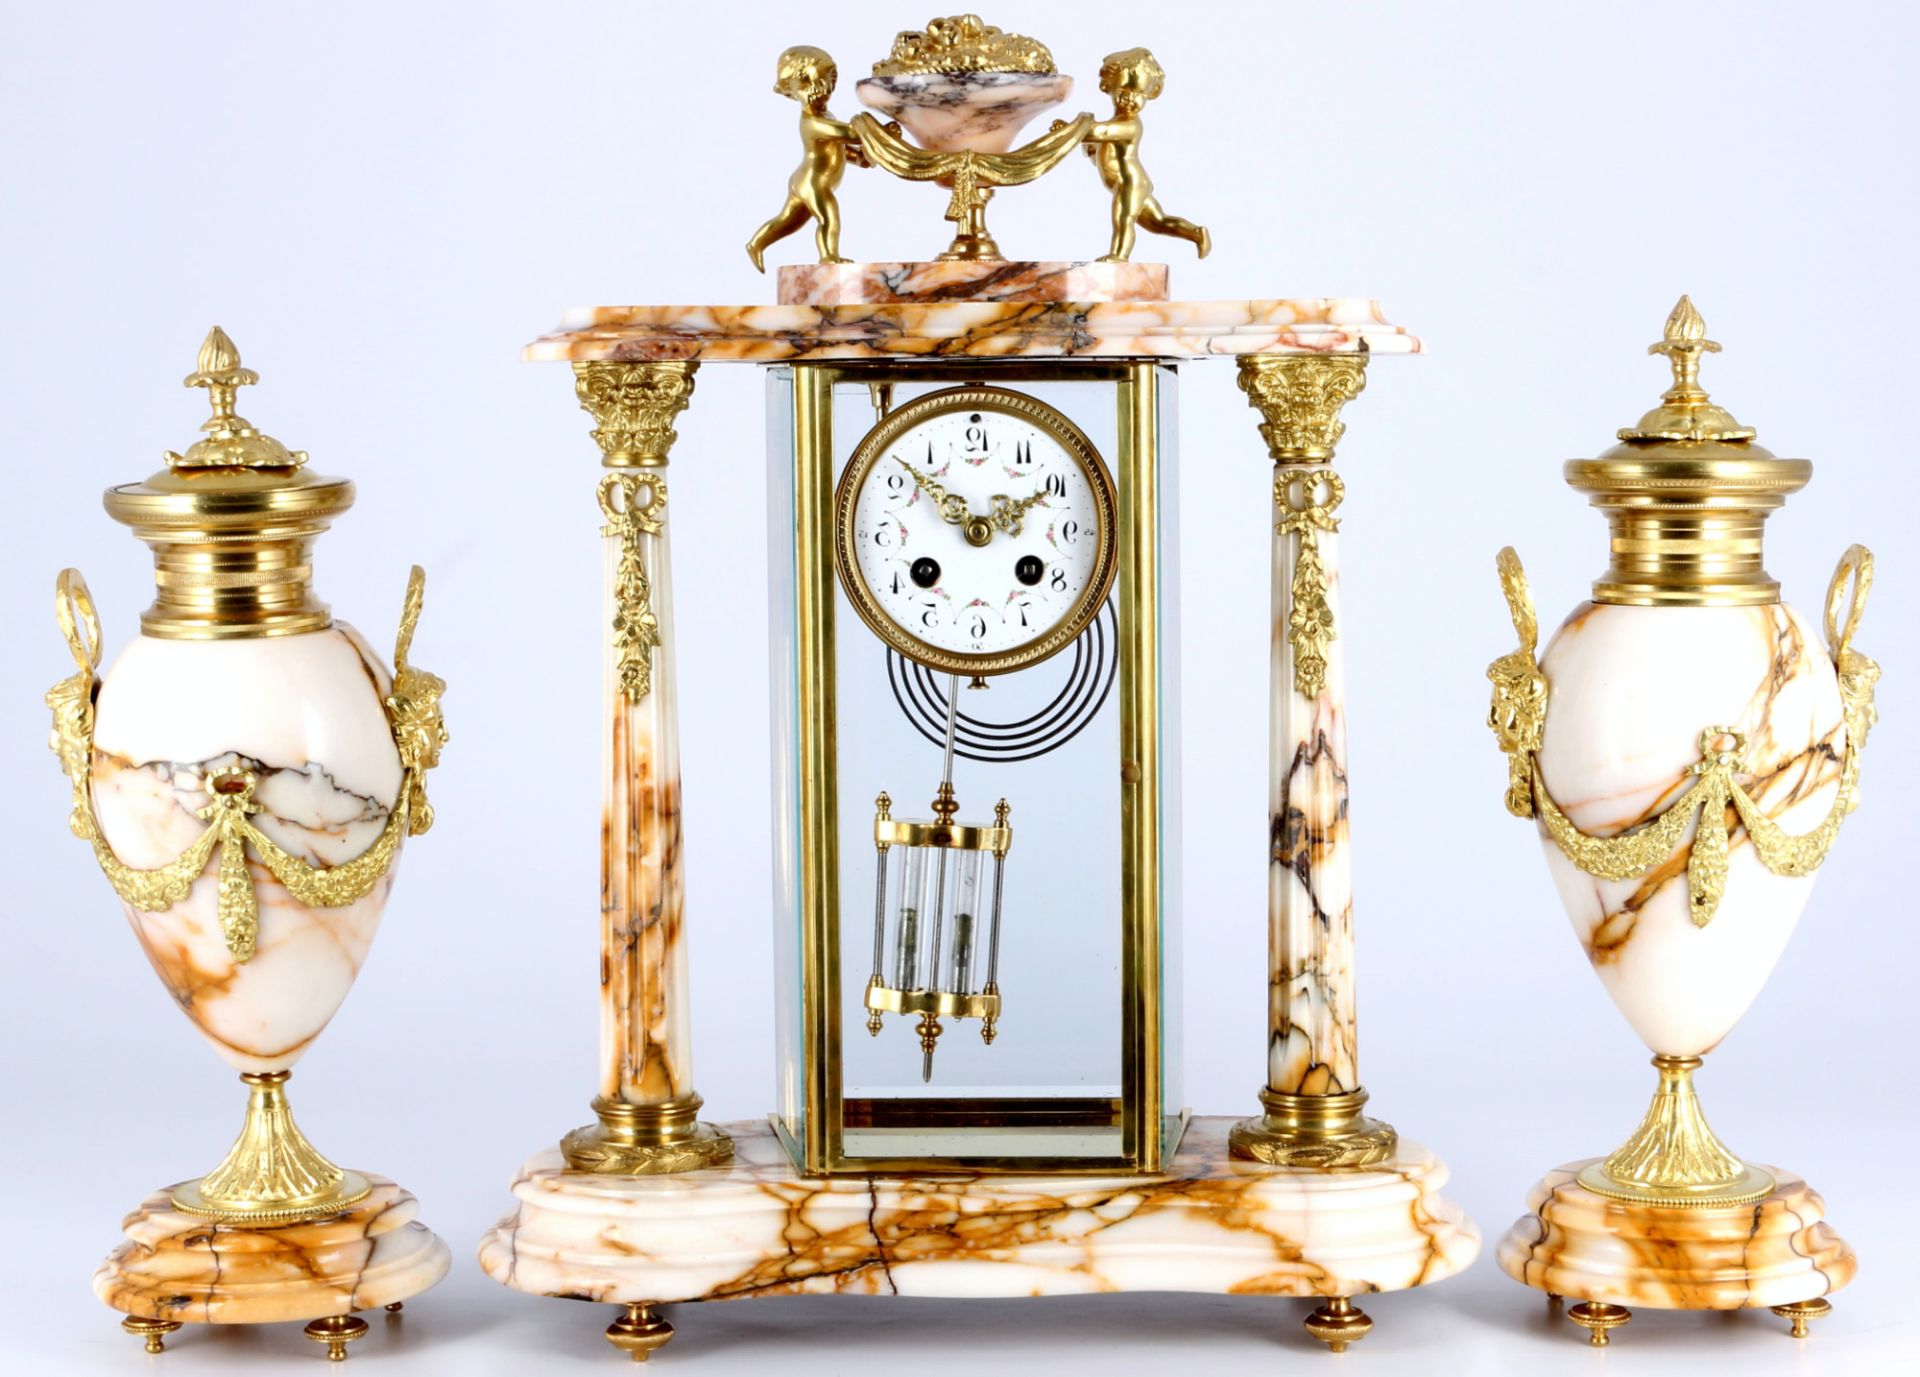 Glaspendule mit Beisteller Frankreich 19. Jahrhundert, french mantel clock 19th century,